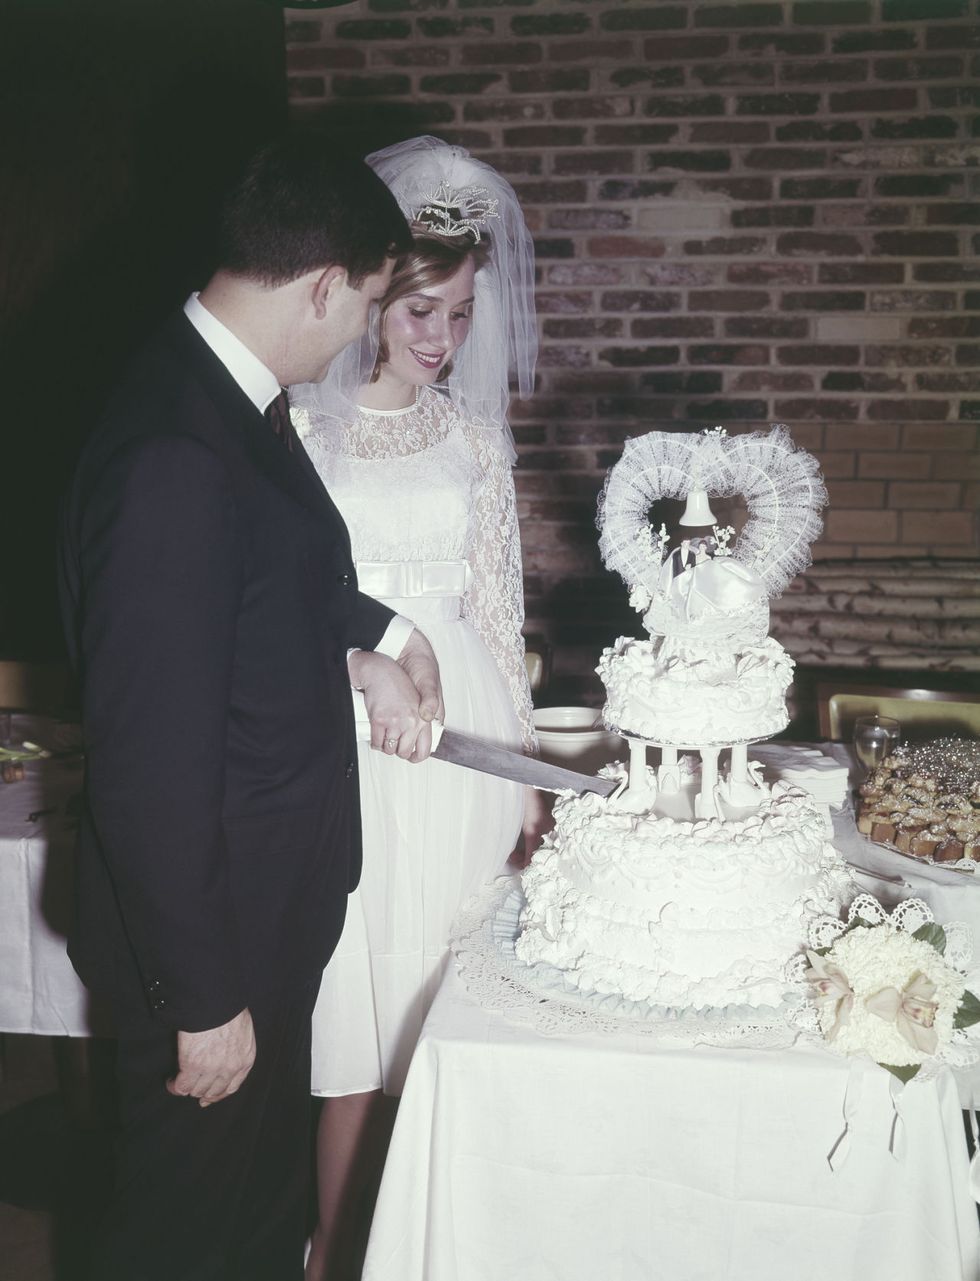 Photograph, White, Wedding dress, Wedding cake, Wedding ceremony supply, Wedding, Ceremony, Bride, Bridal clothing, Cake, 